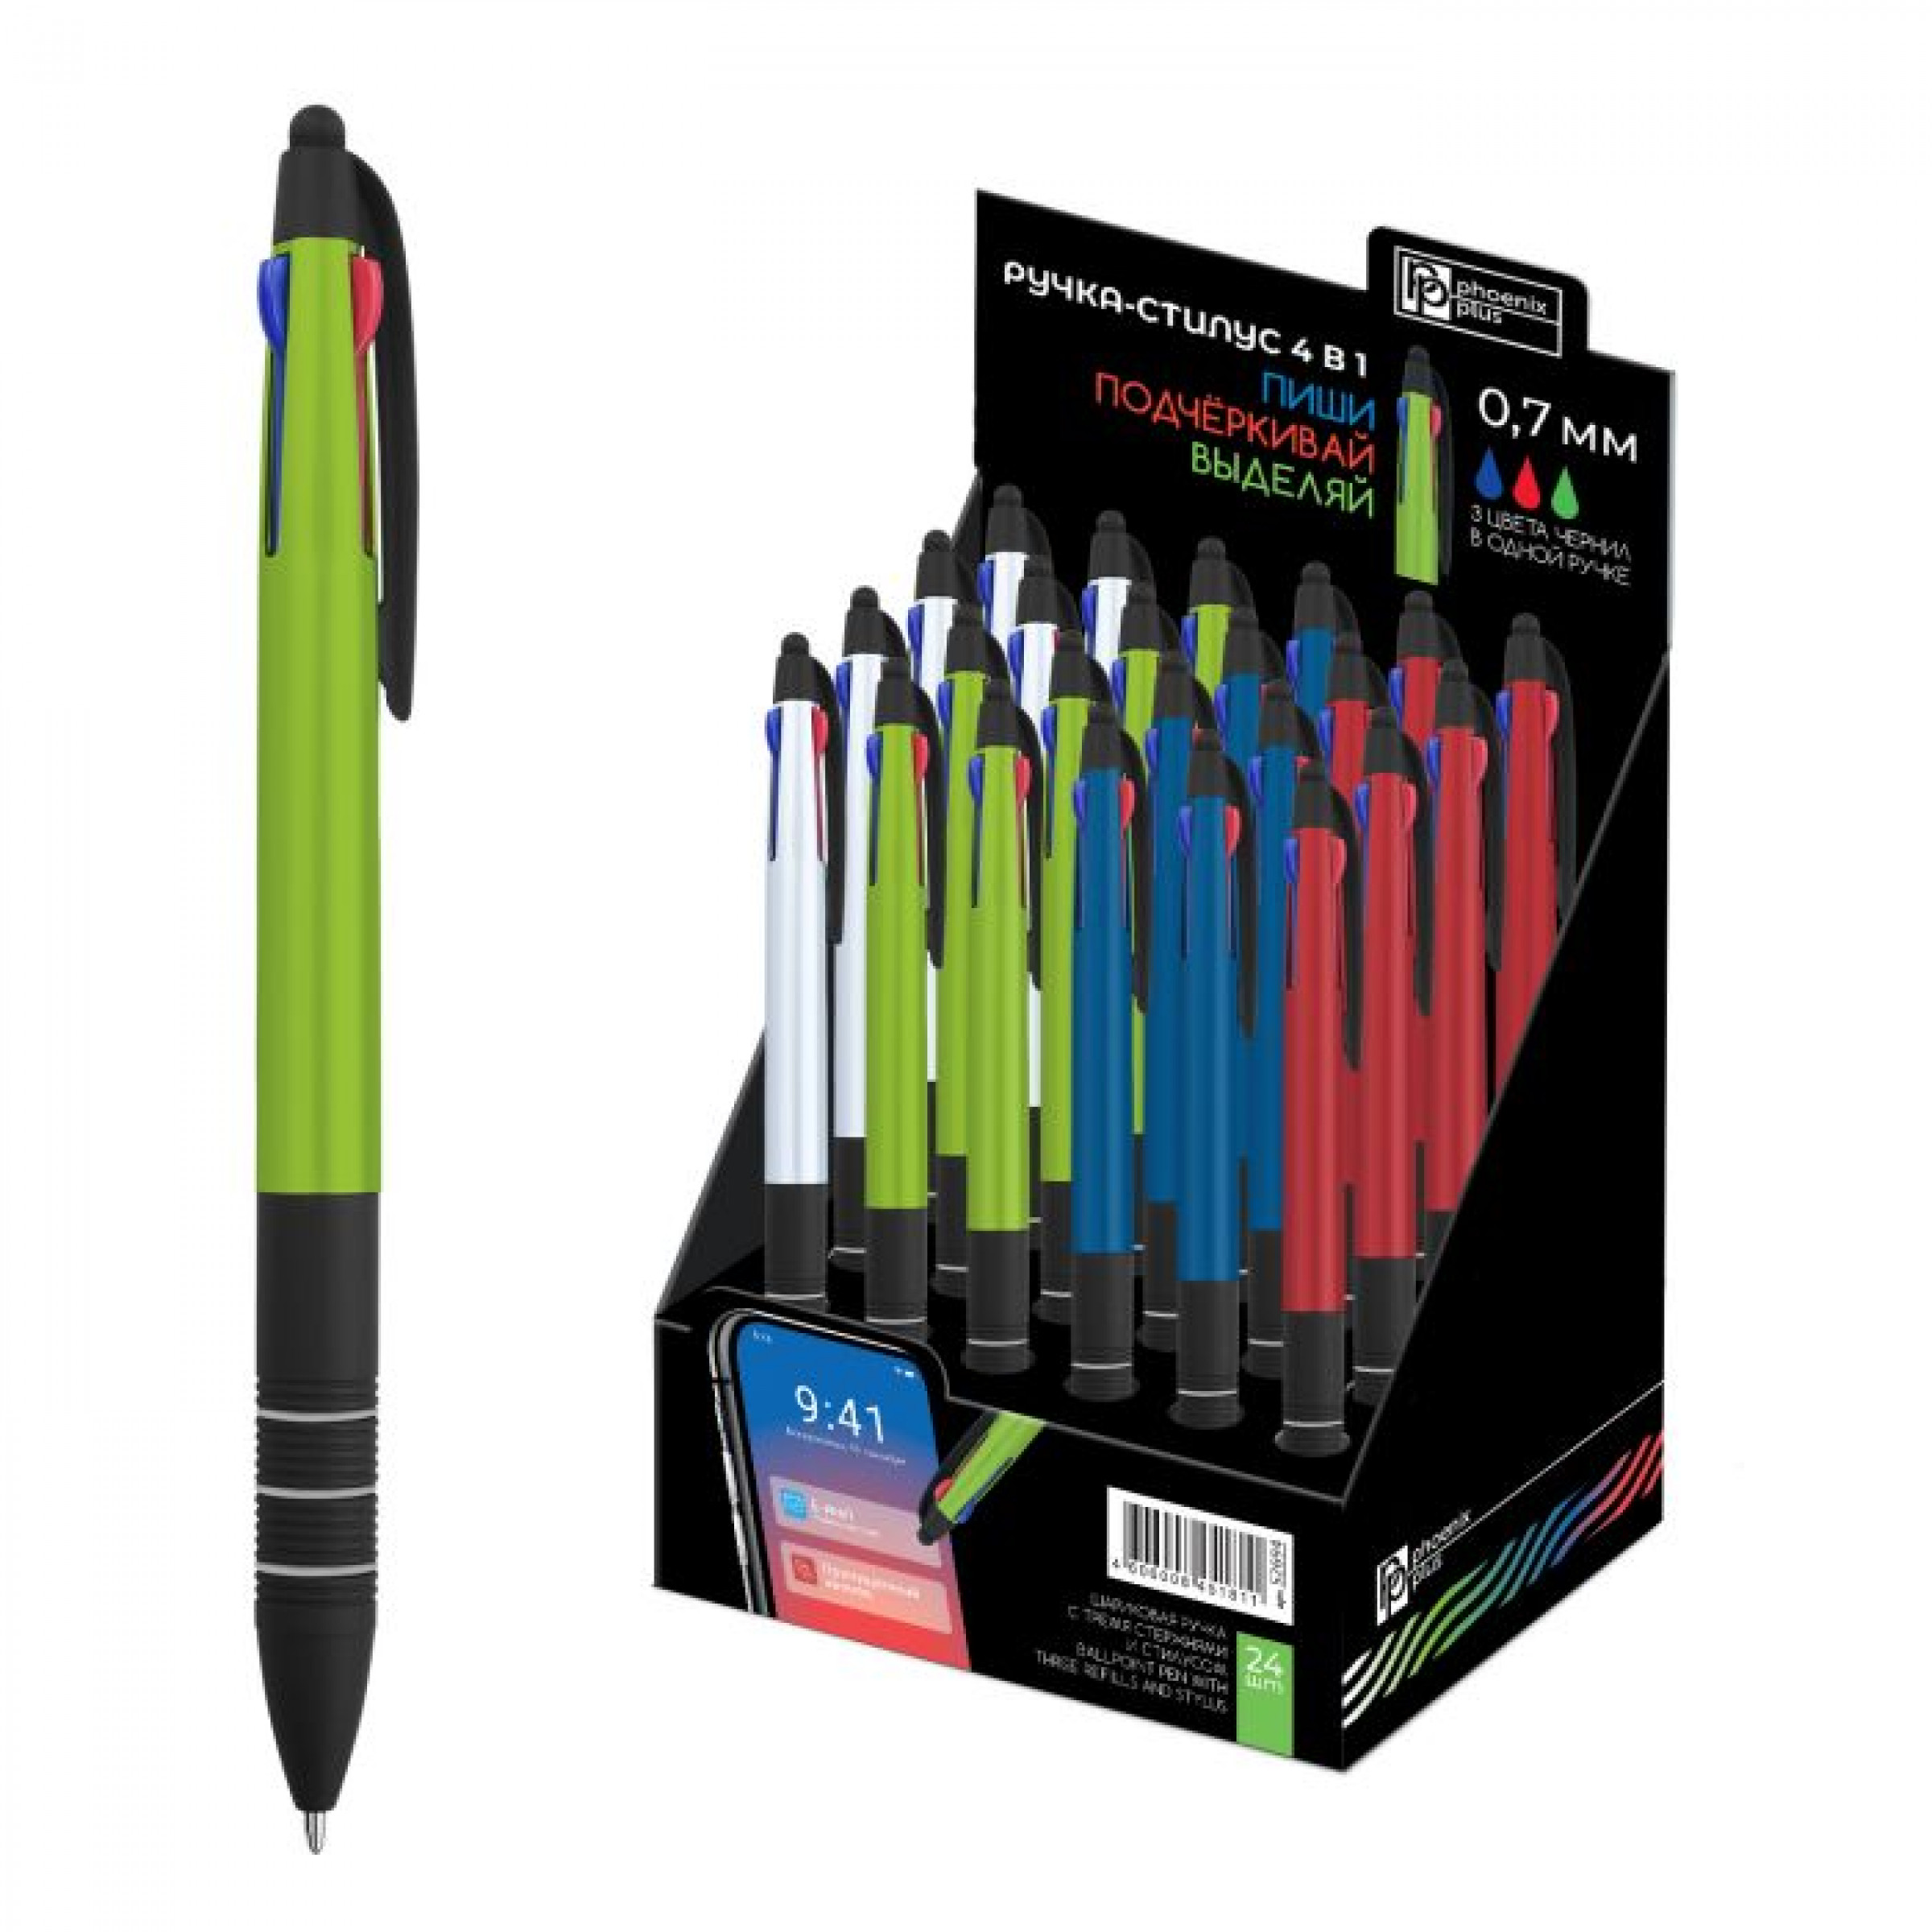 Ручка шариковая, Ручка-стилус 3 в 1, зеленый, красный, синий, 0,7 мм